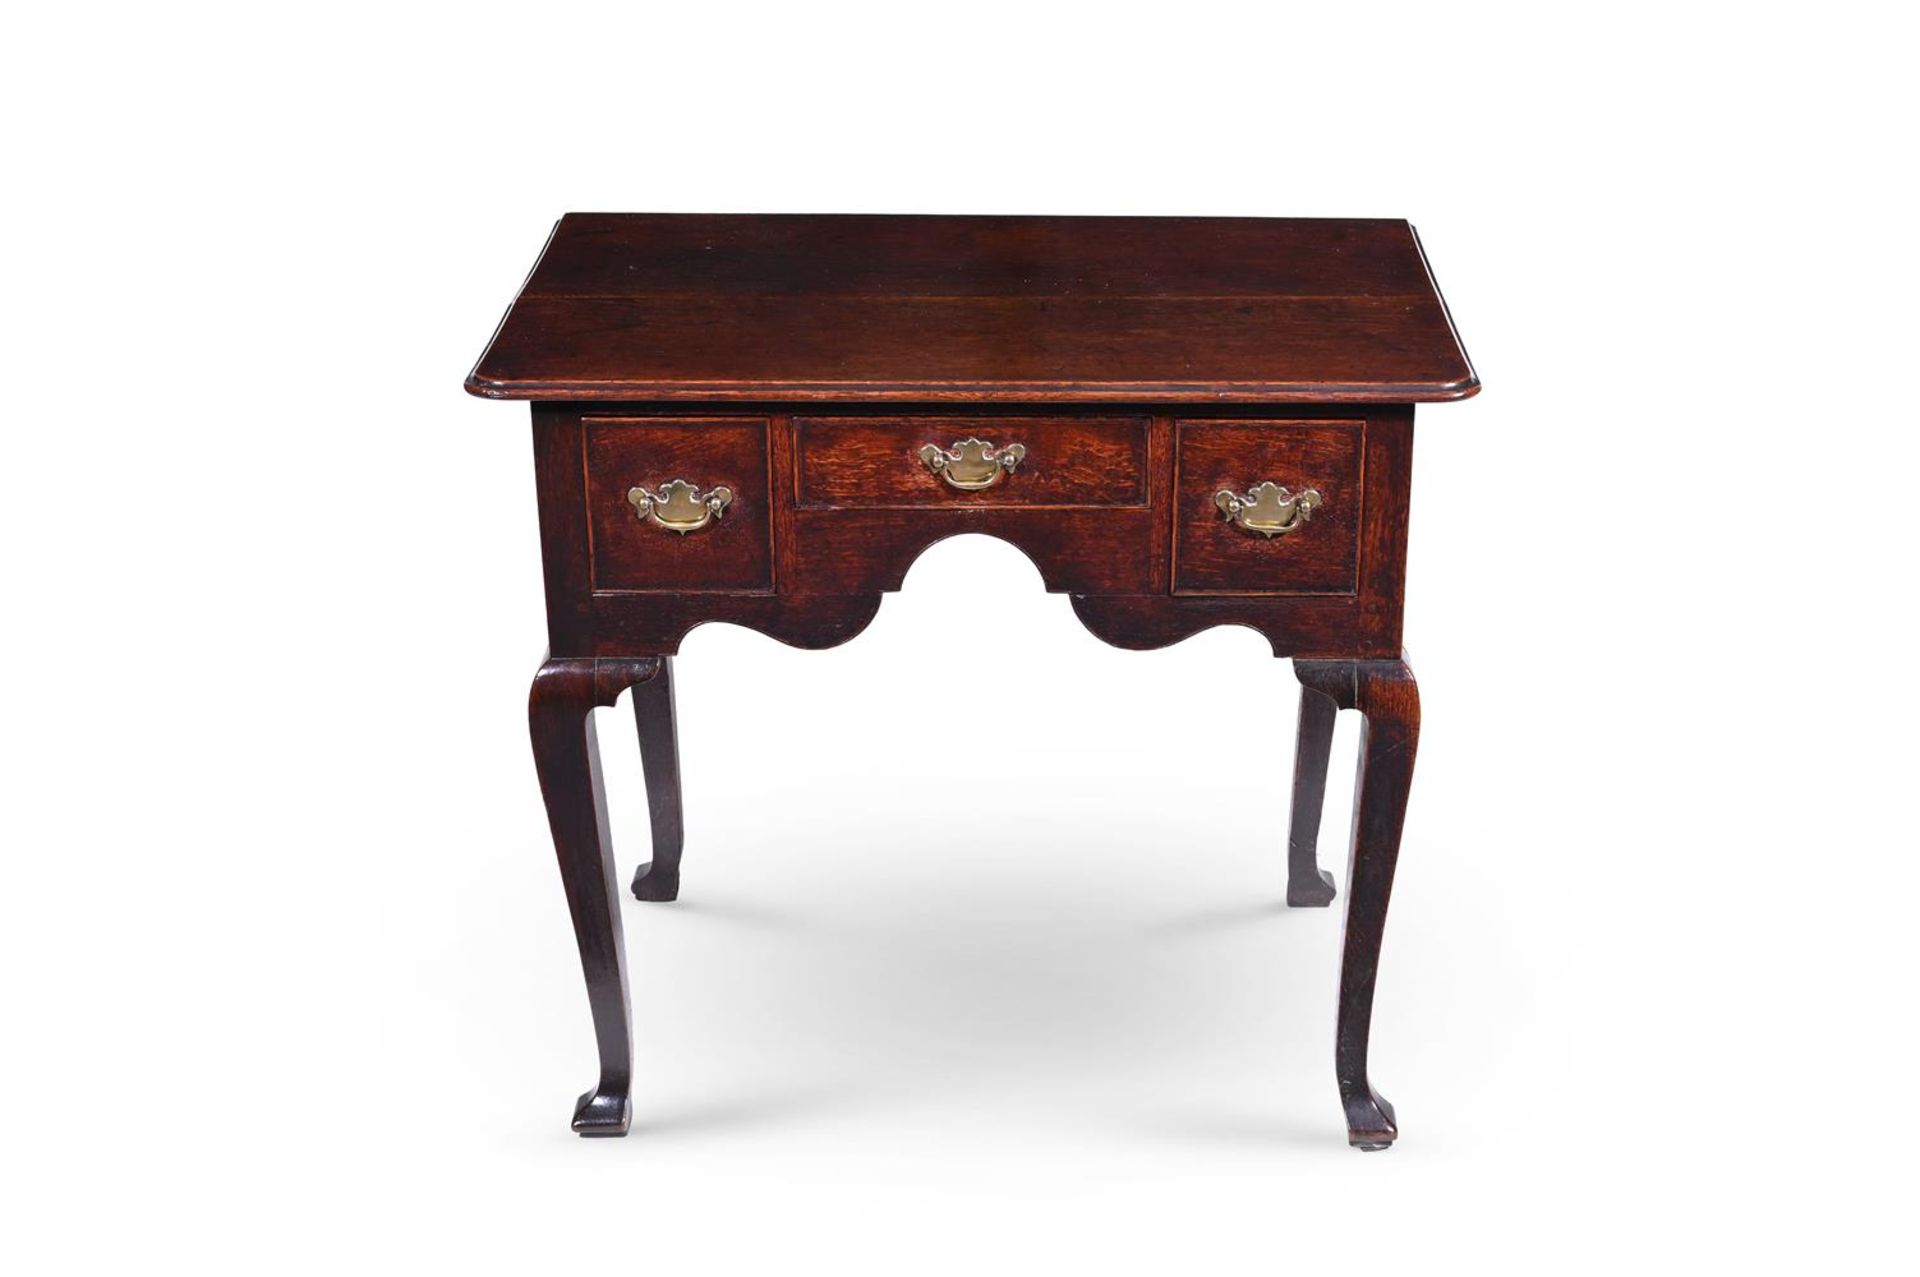 A GEORGE II OAK SIDE TABLE, CIRCA 1740